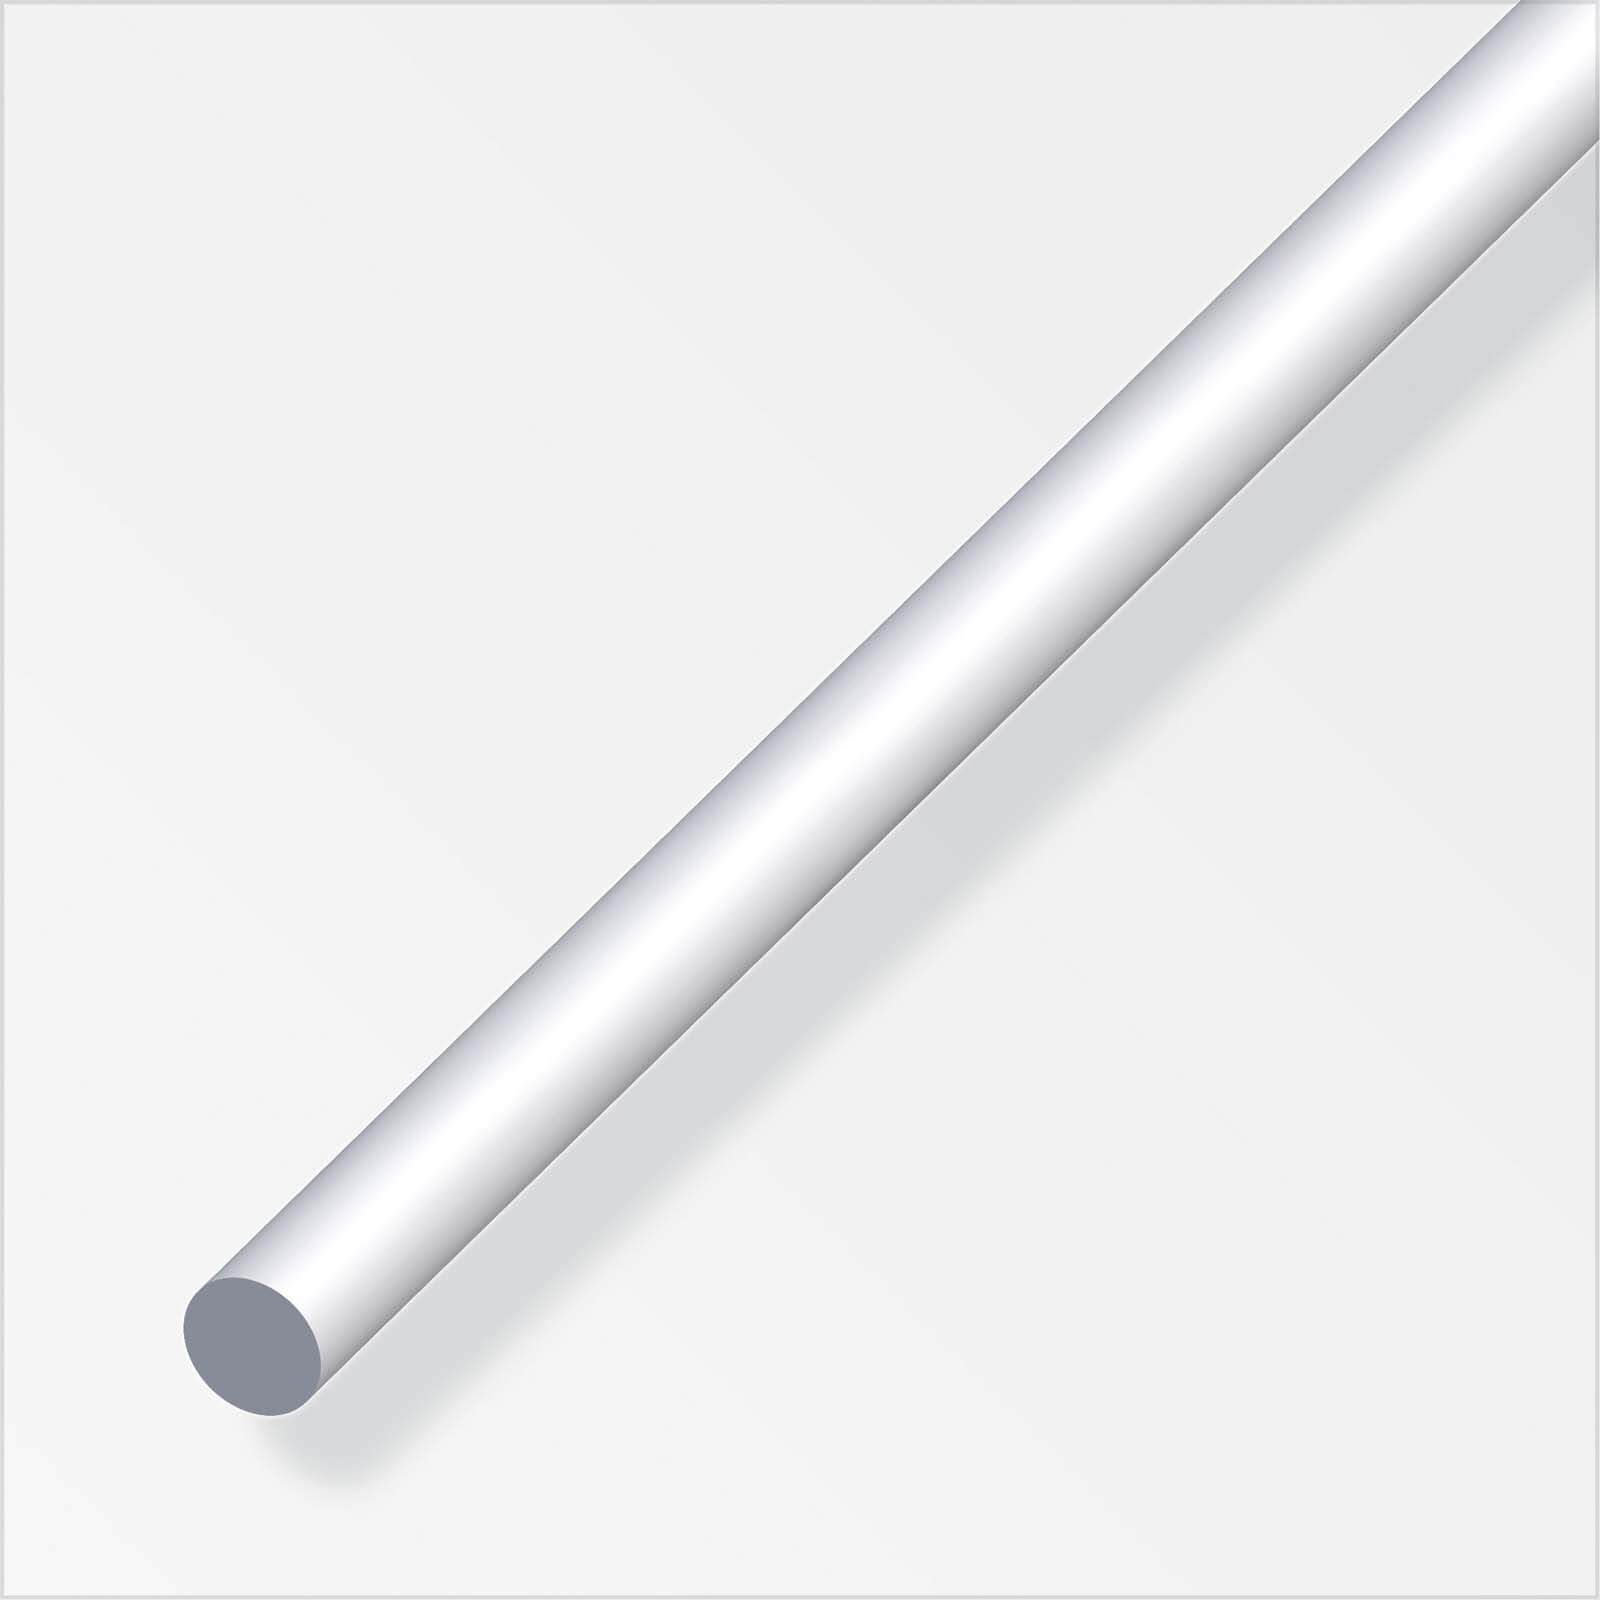 Anodised Aluminium Round Rod Profile - 1m x 4mm